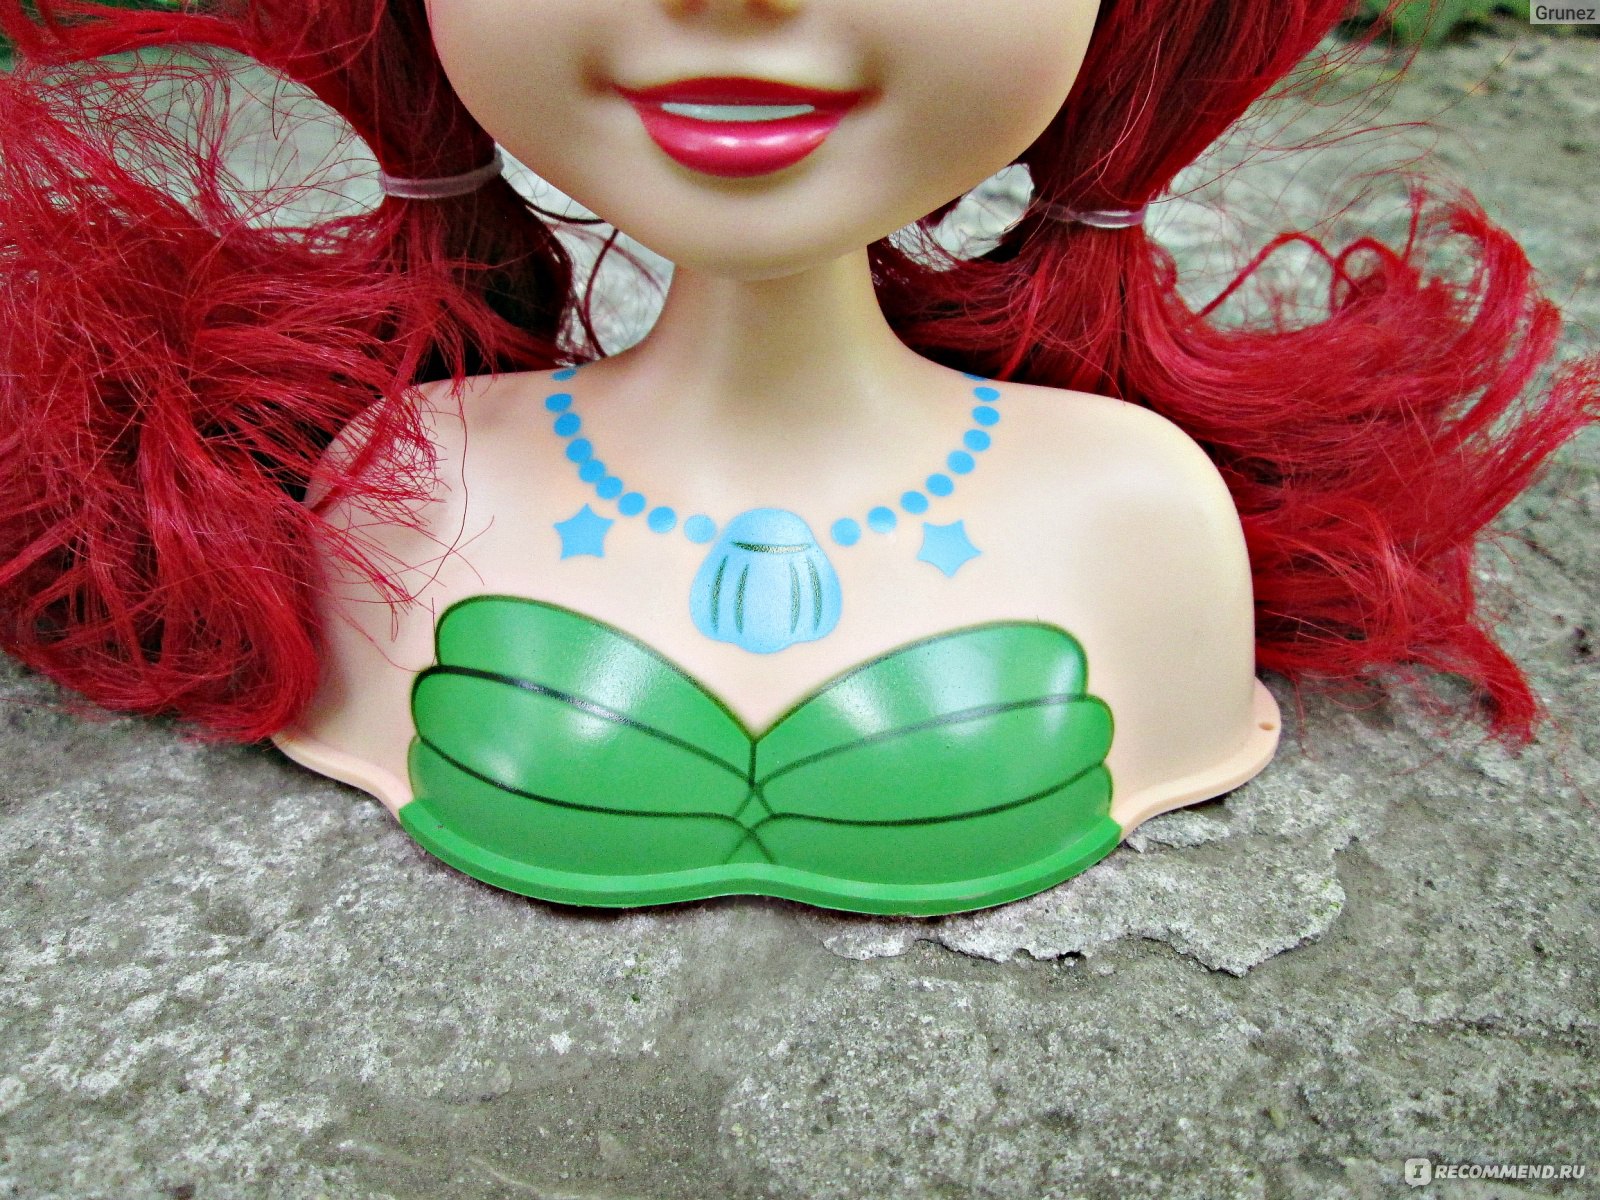 Кукла манекен с аксессуарами купить в Новосибирске - интернет магазин Rich Family